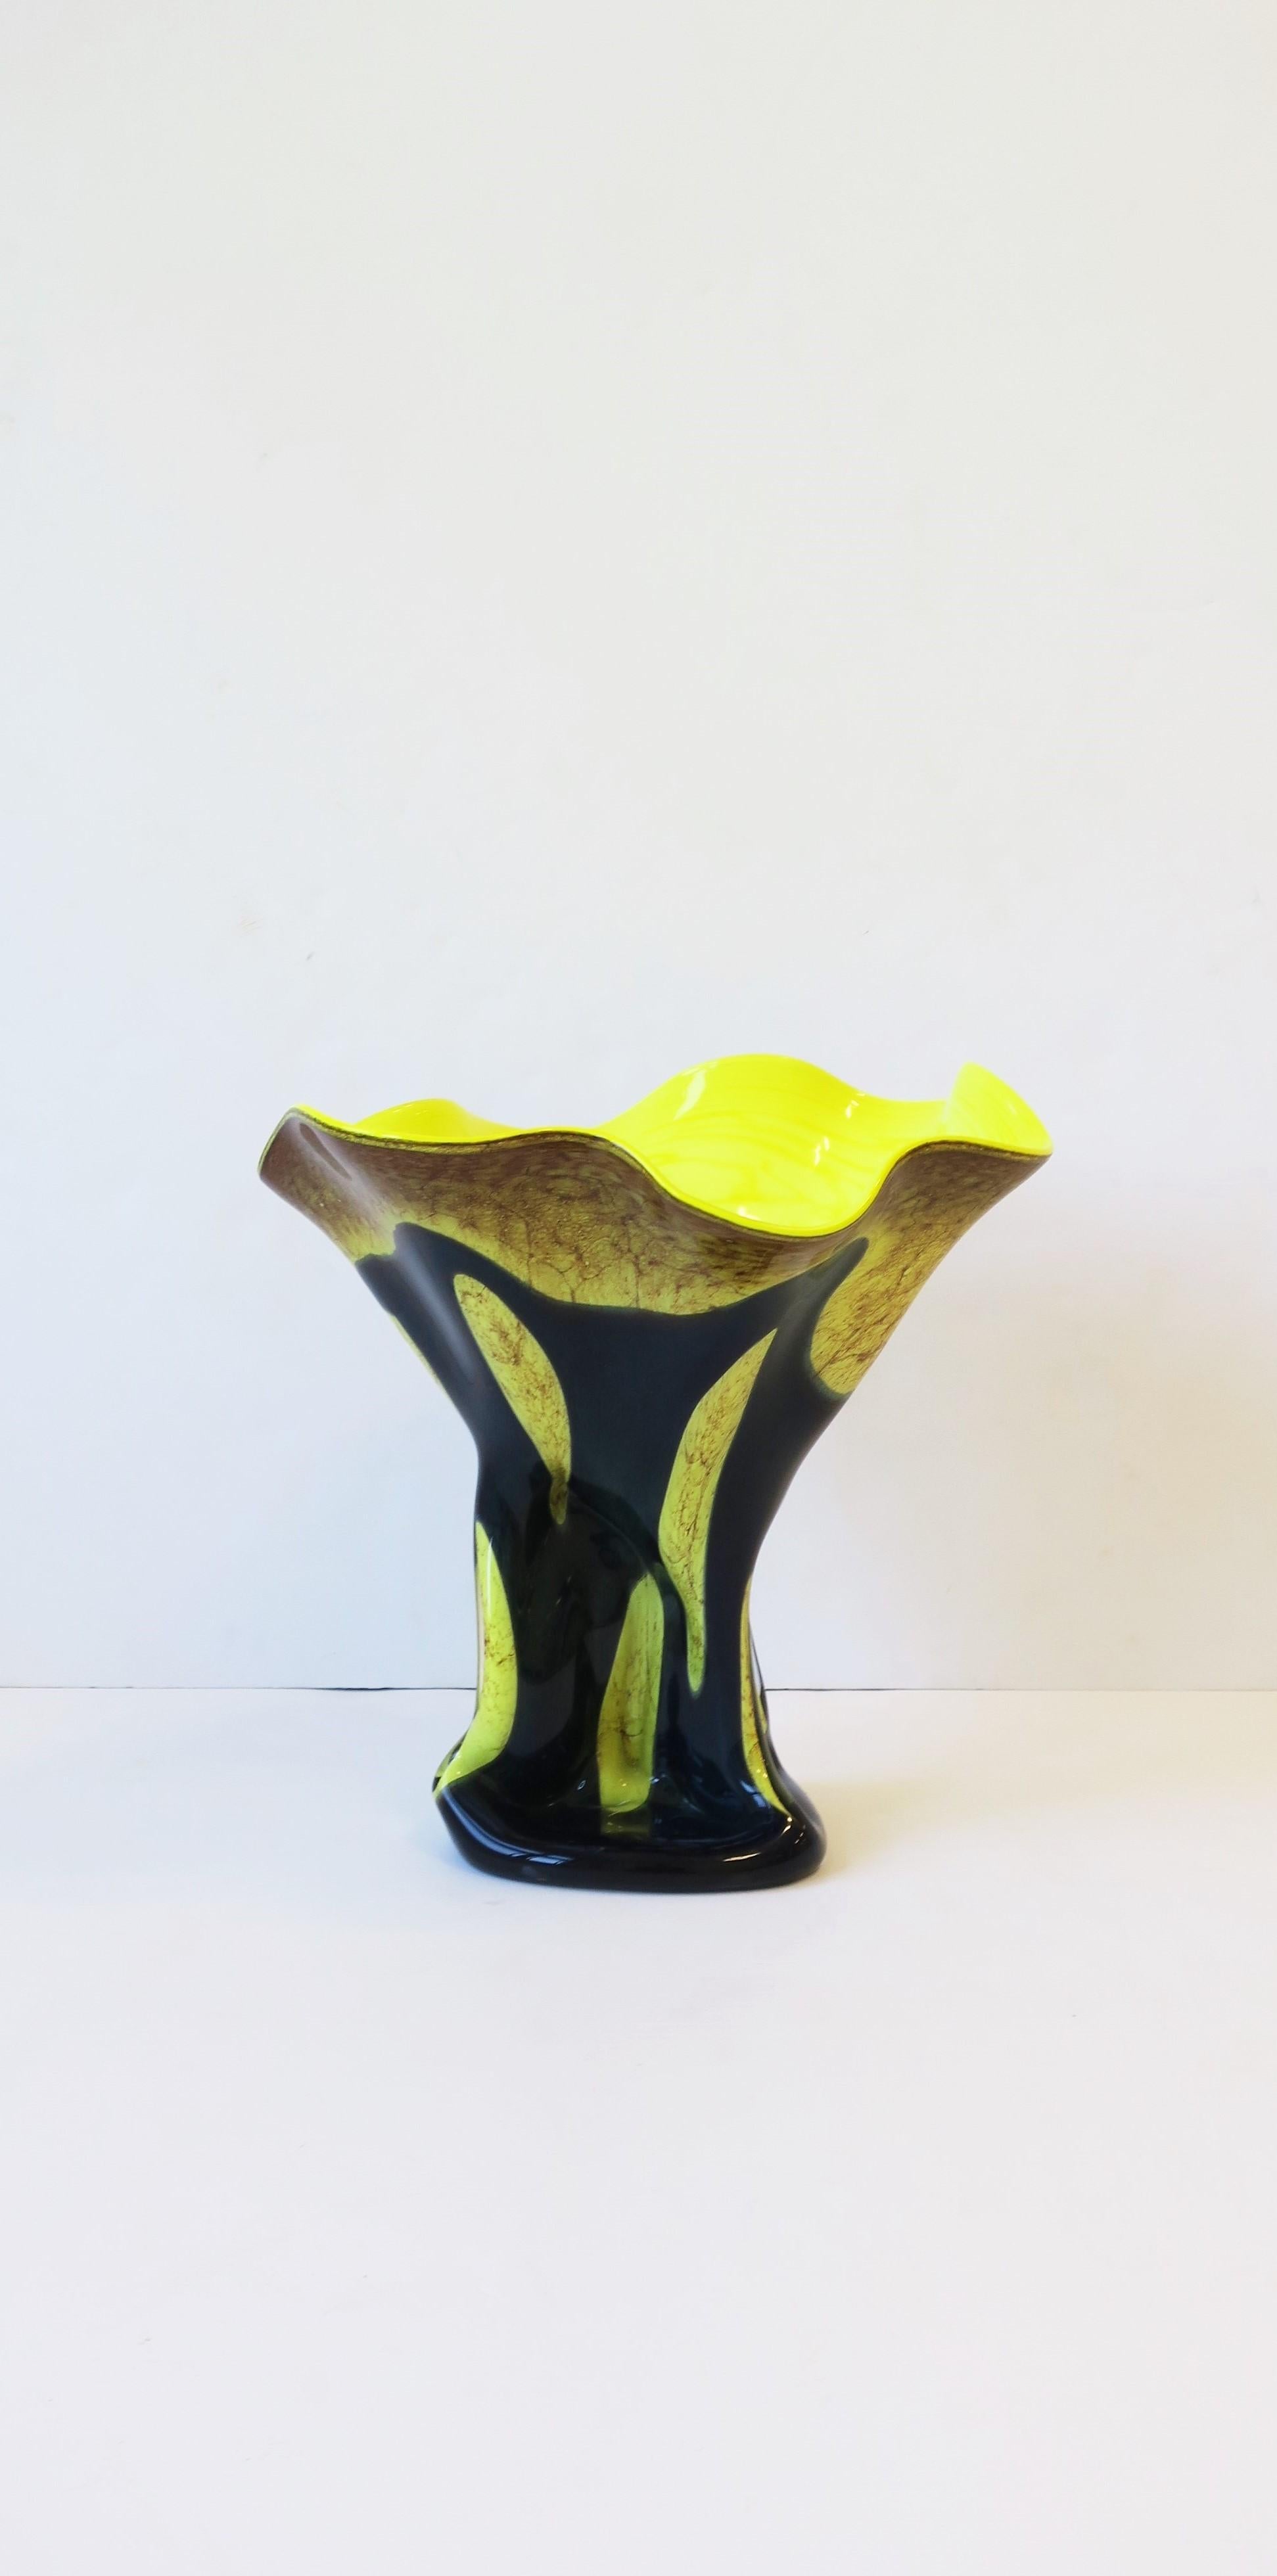 Très beau vase sculpture en verre organique moderne soufflé à la main, jaune néon brillant et bleu sarcelle foncé, vers le milieu ou la fin du 20e siècle. Magnifique comme pièce unique ou avec des fleurs, des branches, etc.etc. Marque de pontil poli